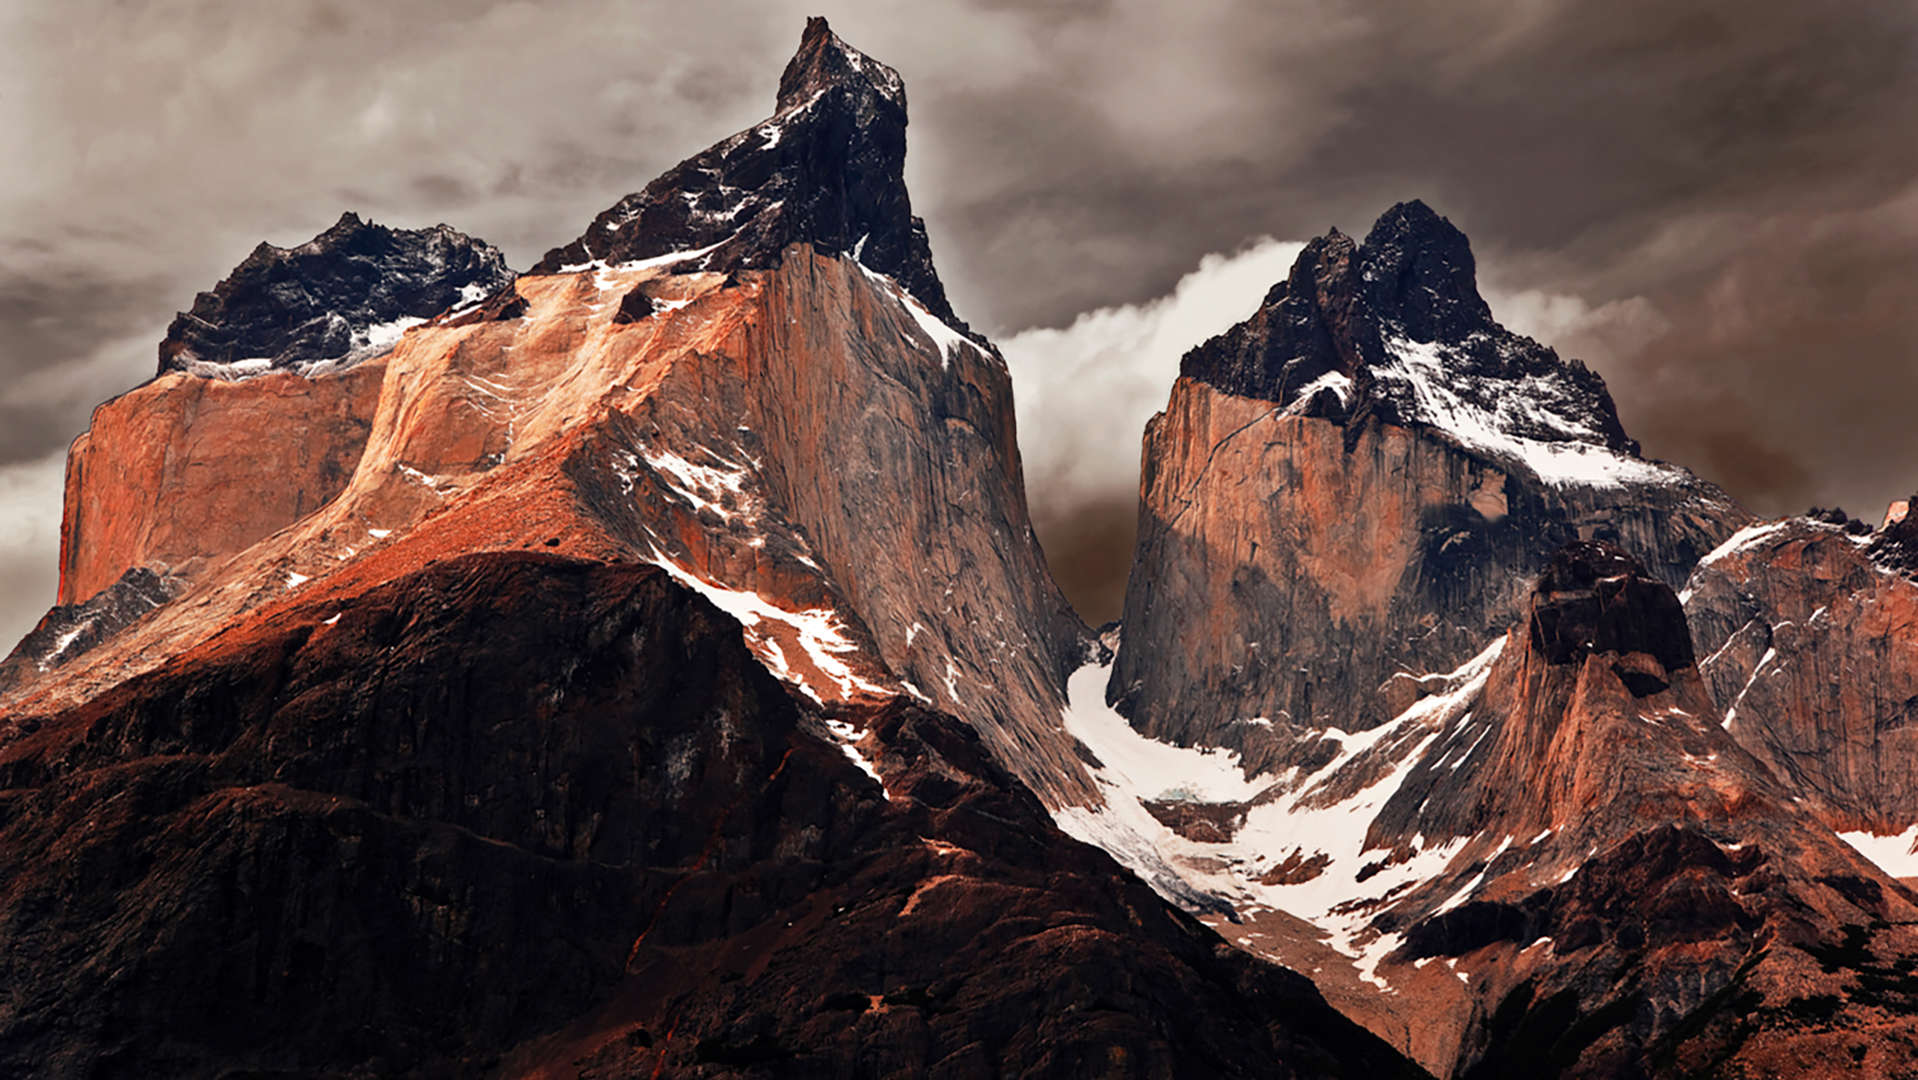 슬라이드 11/11: The Cuernos del Paine peaks in Torres del Paine National Park, Chile